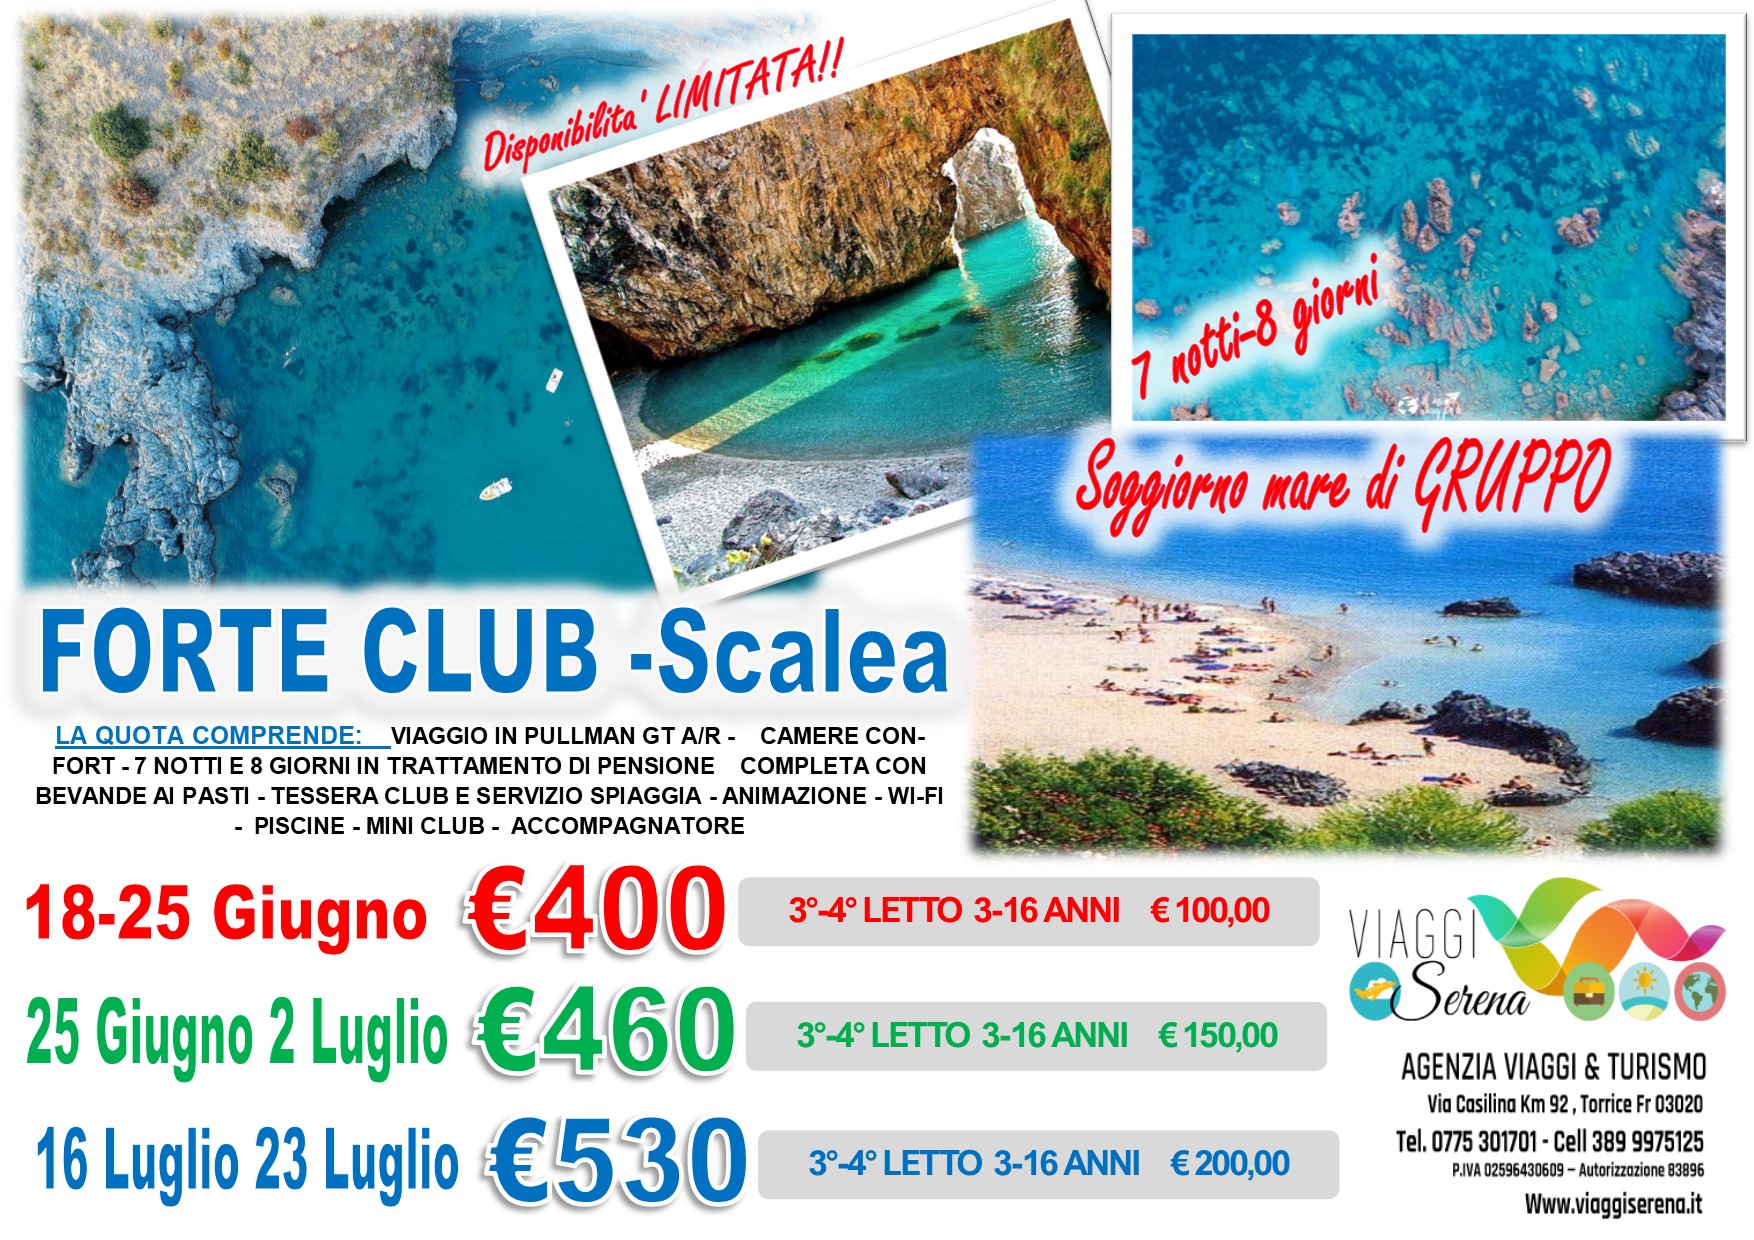 Viaggi di Gruppo: Soggiorno Mare “Villaggio Forte Club” Scalea 16-23 Luglio €530,00